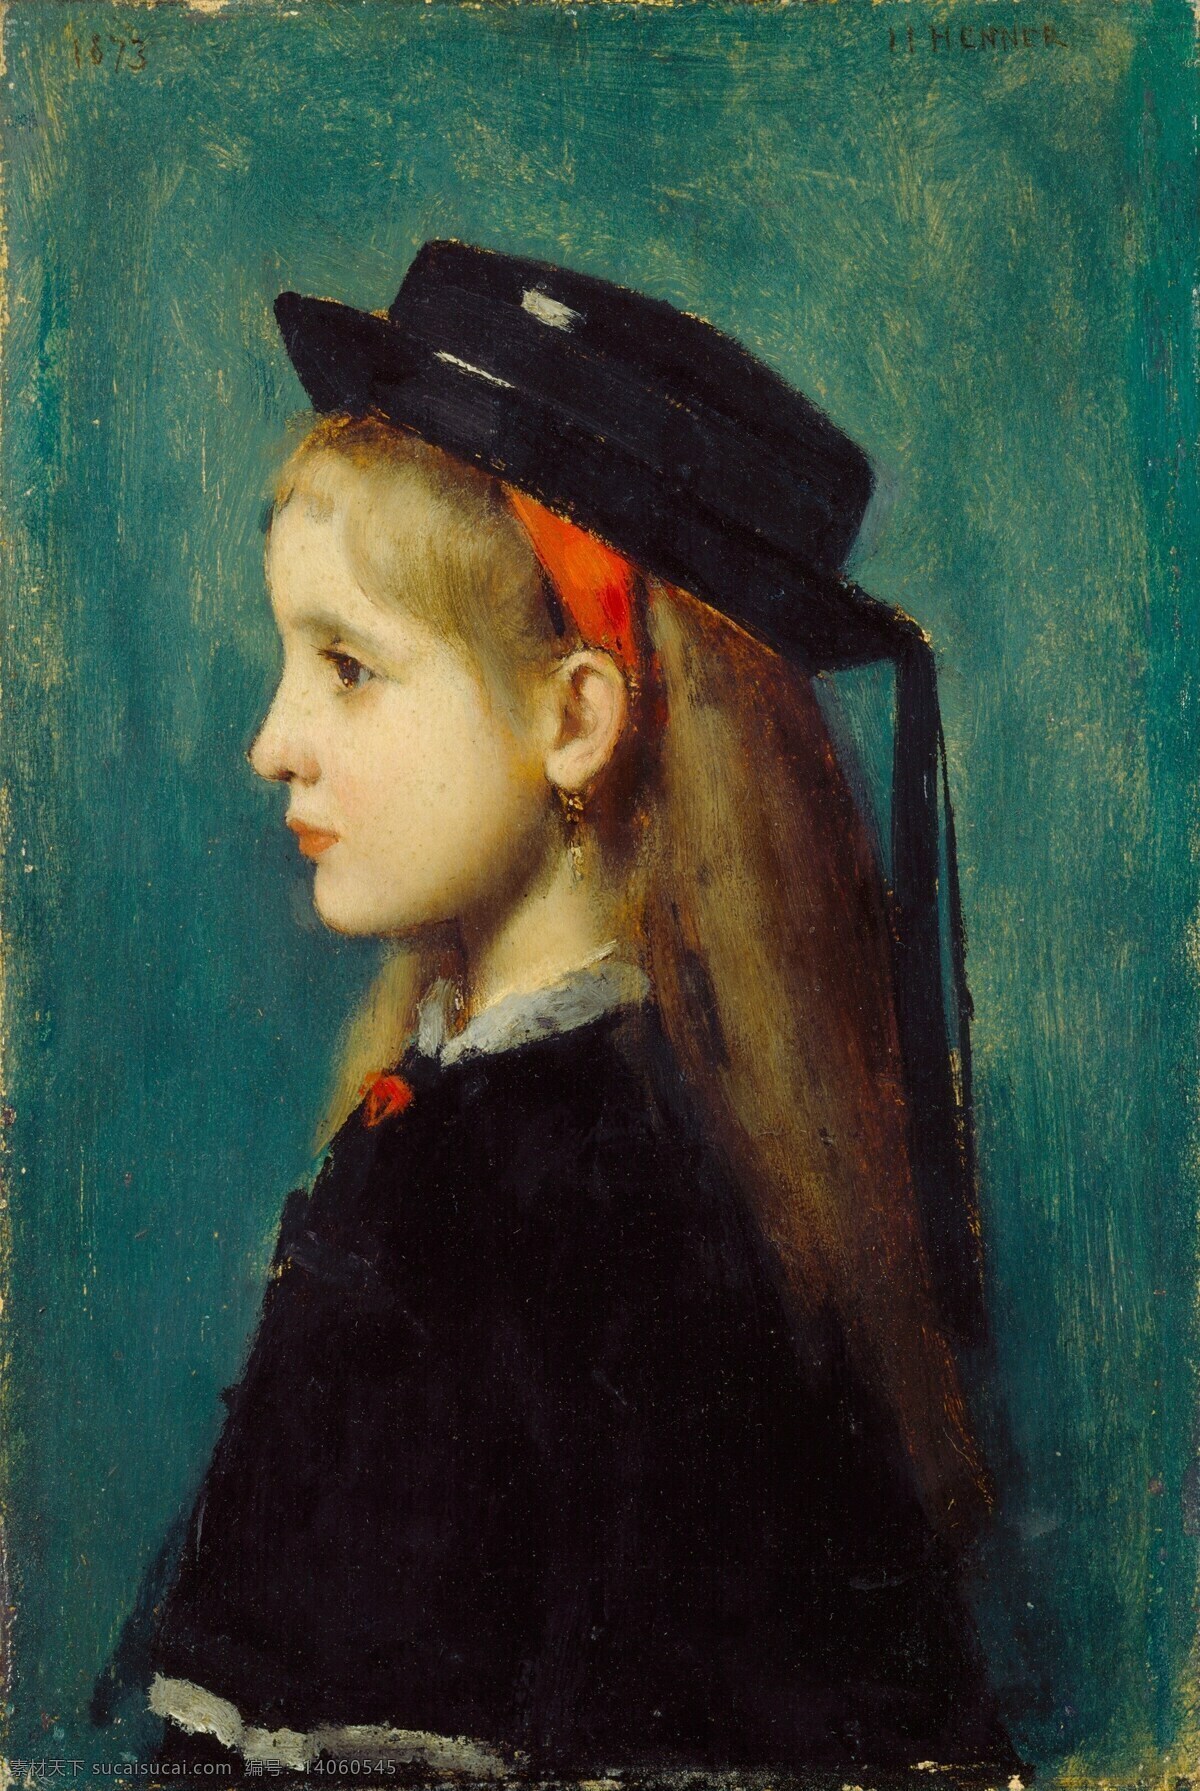 阿尔萨斯 女孩儿 让贾可 汉纳作品 法国画家 德法交界处 人物肖像 19世纪油画 油画 文化艺术 绘画书法